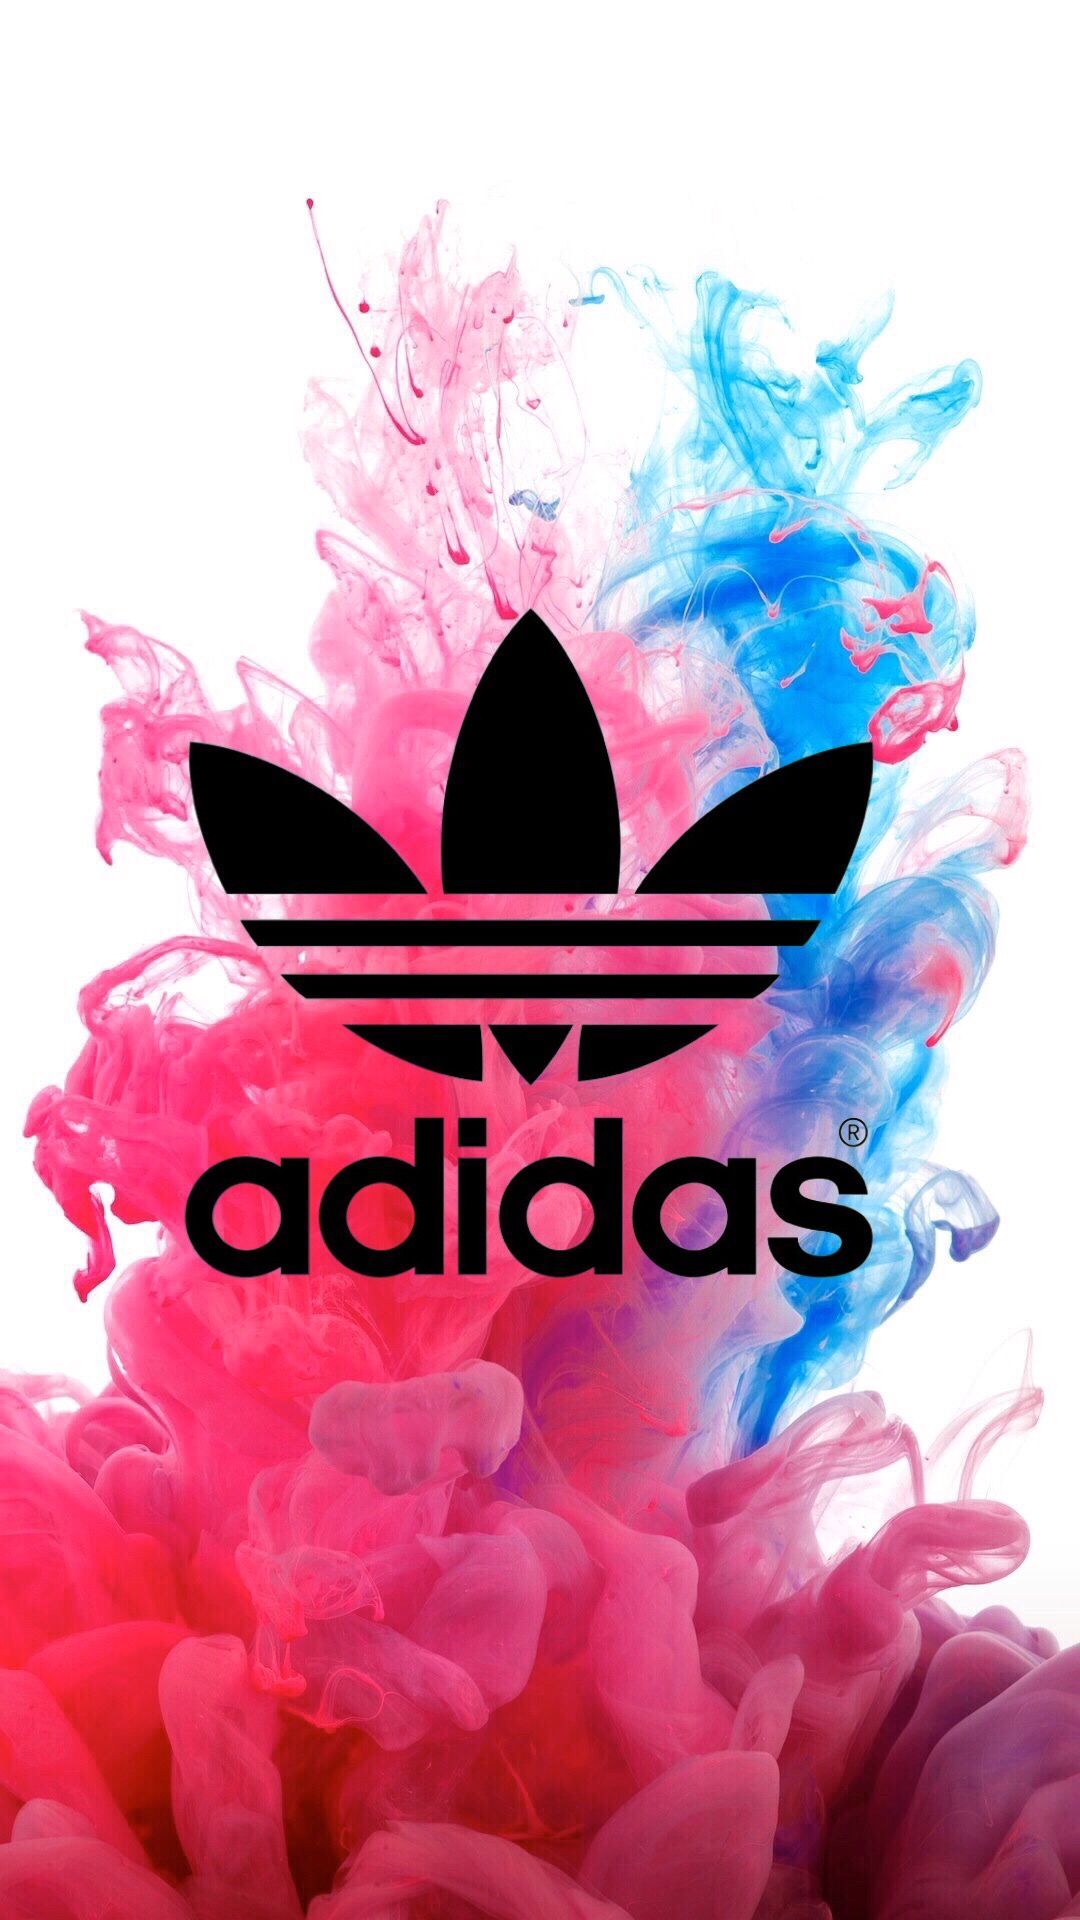 Girls Adidas Logo iPhone Wallpapers on WallpaperDog